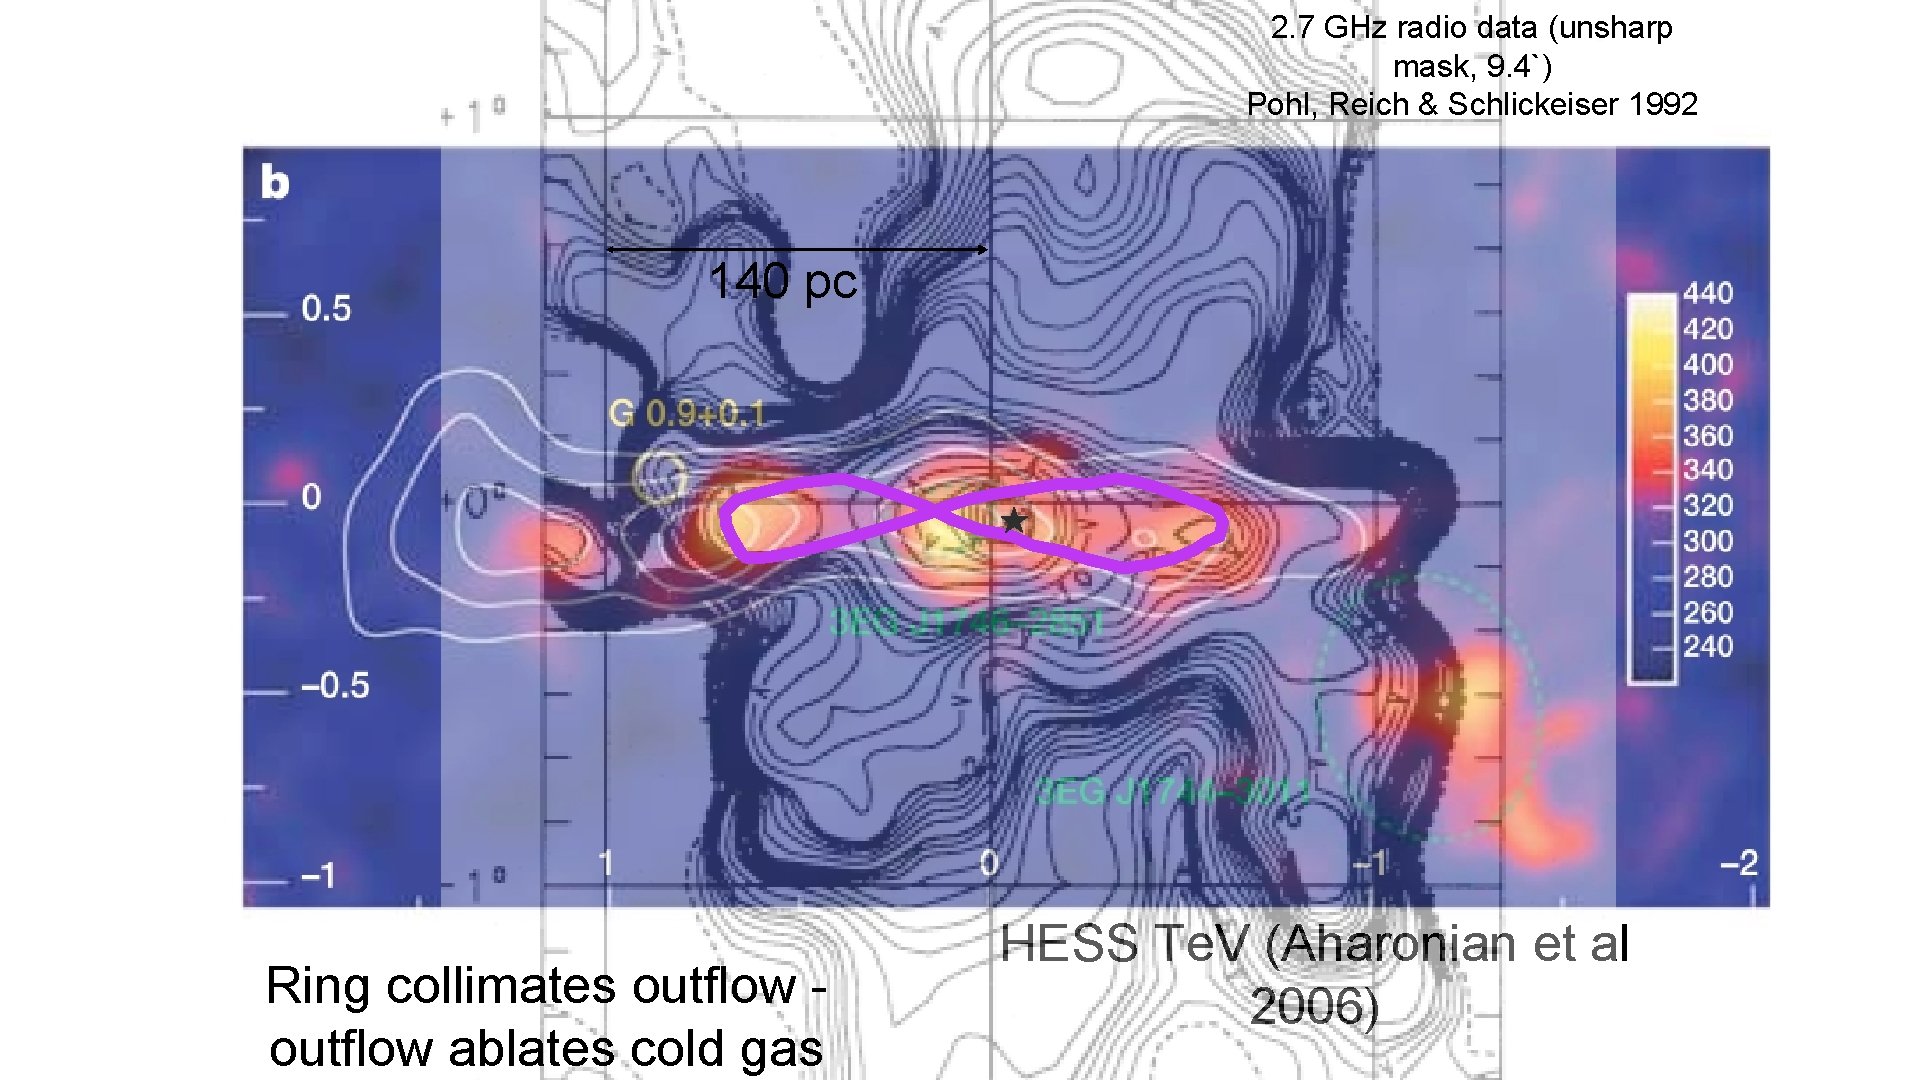 Herschel SPIRE 250 μm (Molinari et al. 2011) 2. 7 GHz radio data (unsharp